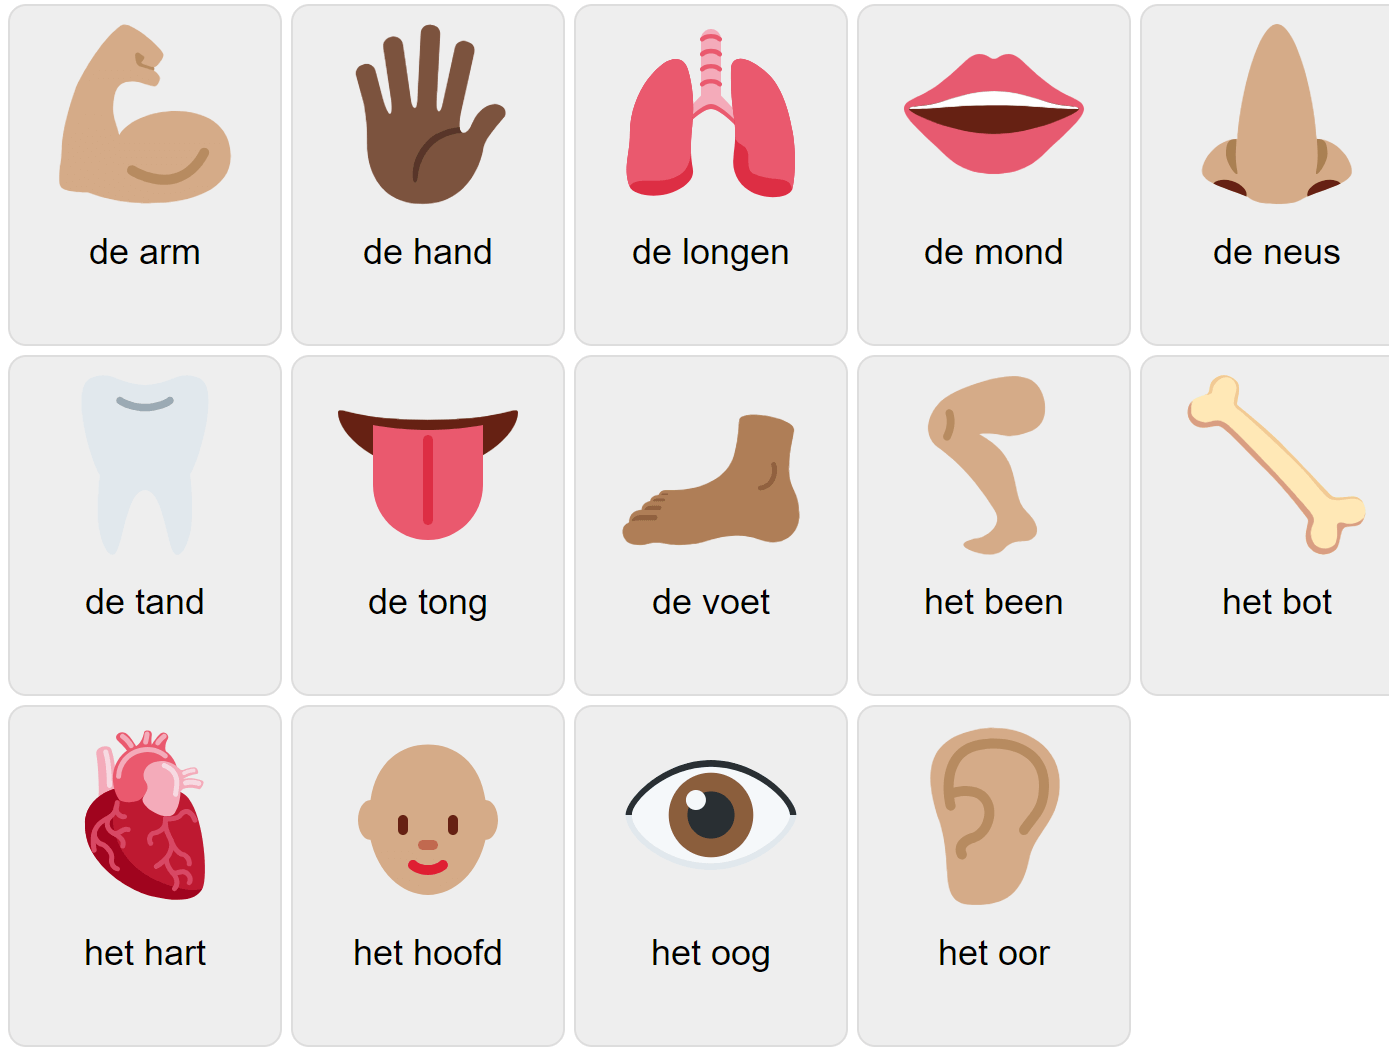 Körperteile auf Niederländisch